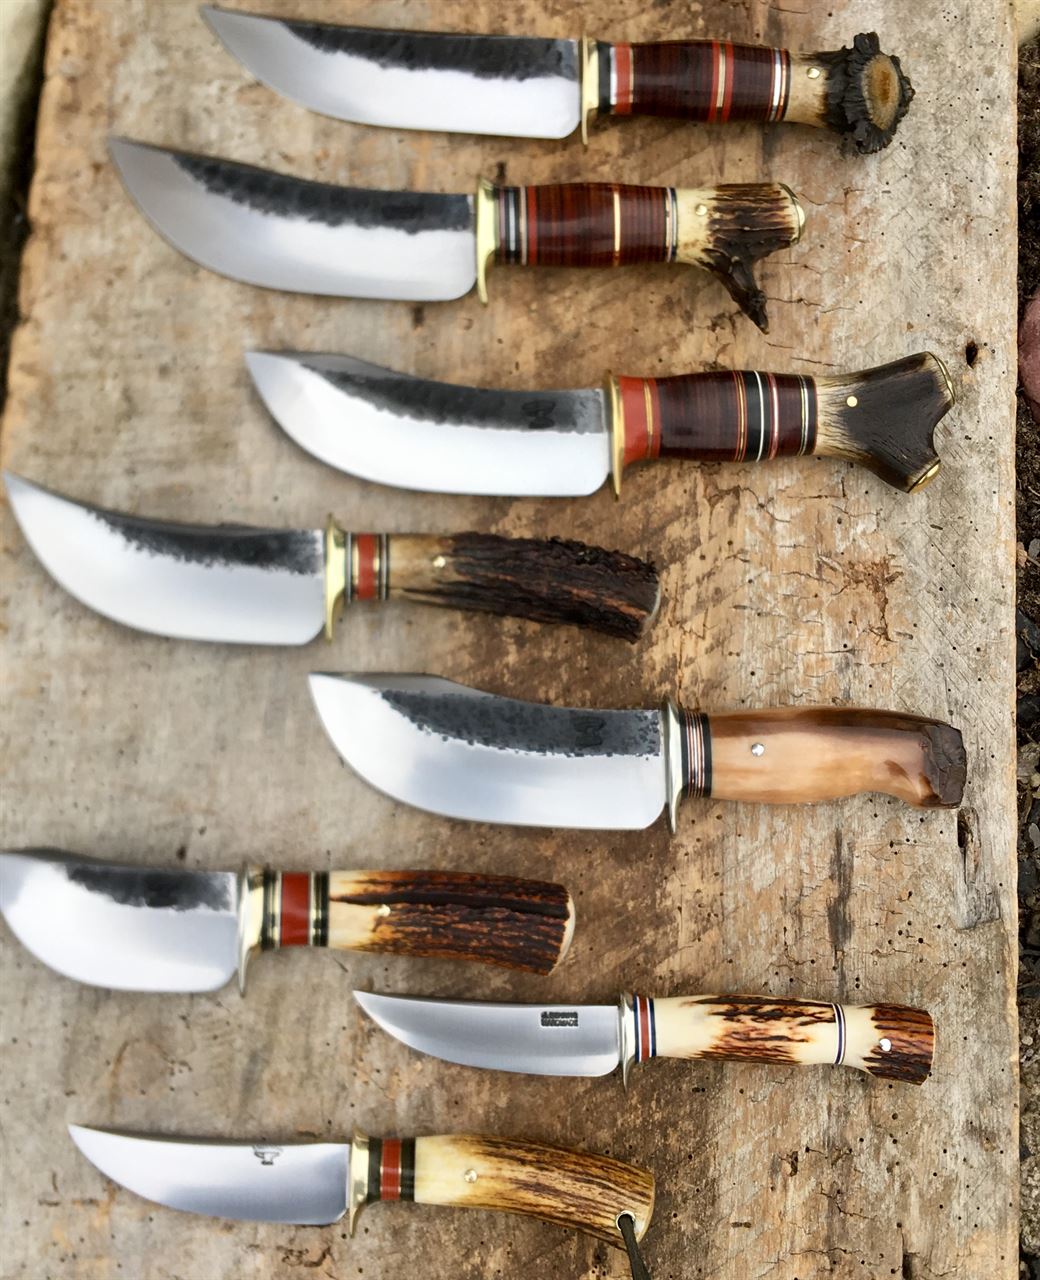    J. Behring Handmade Knives 1-12-19